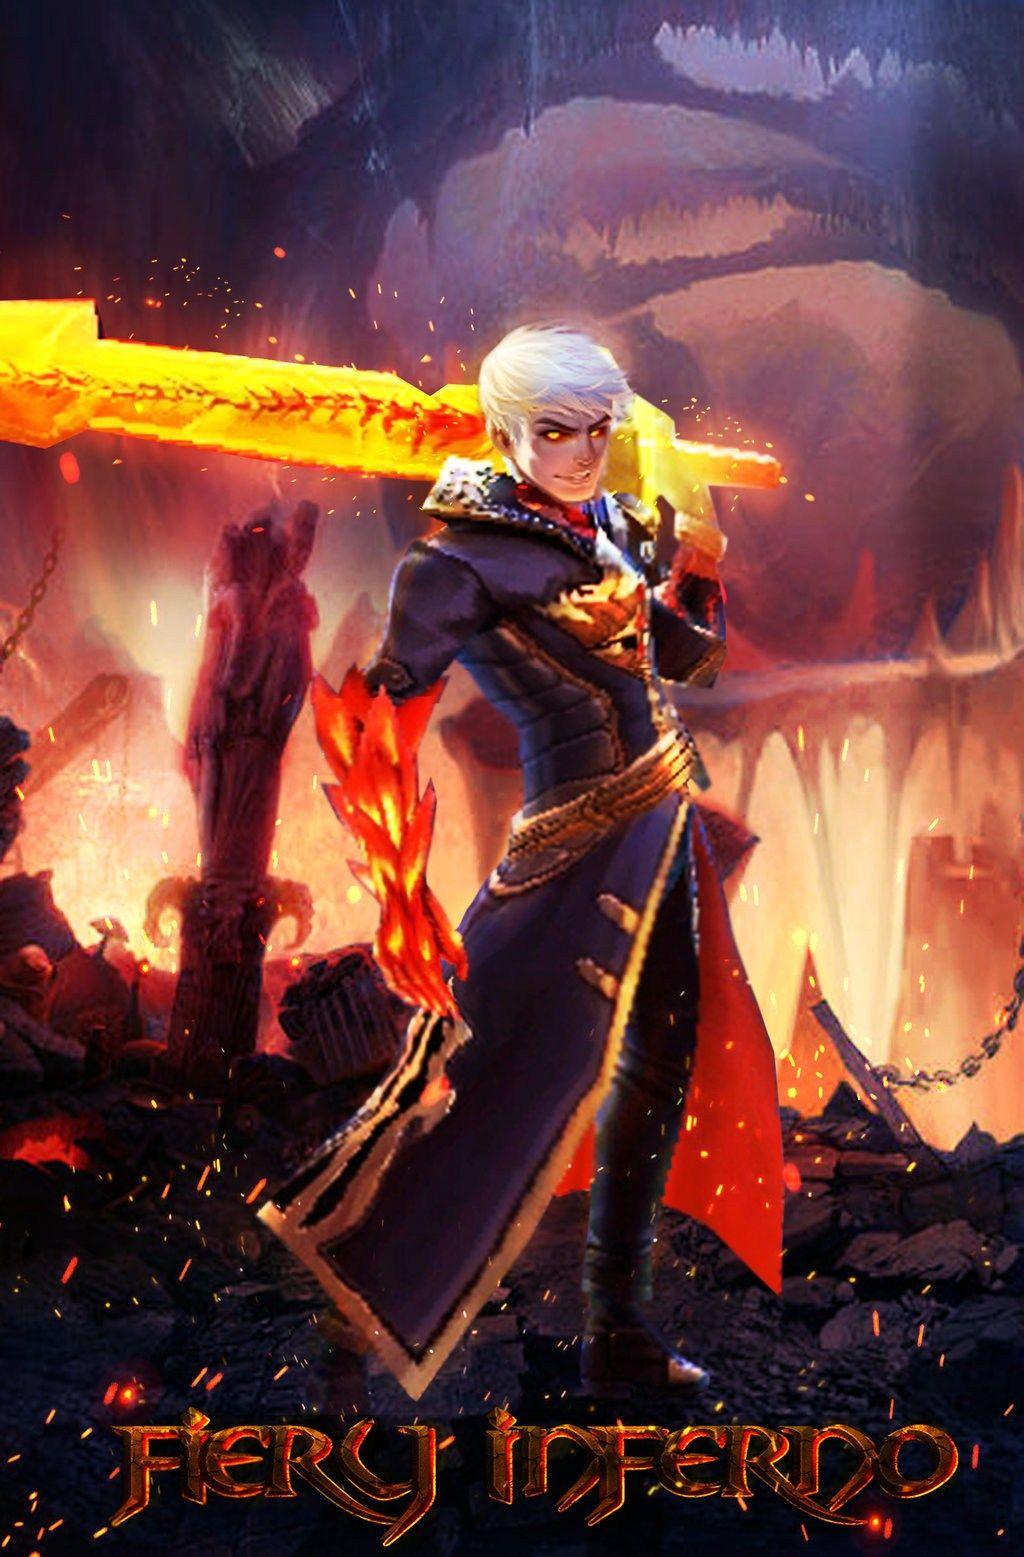 alucard legends mobile skin fiery inferno legend wallpapers hero deviantart tricks tips play fan wallpapersafari